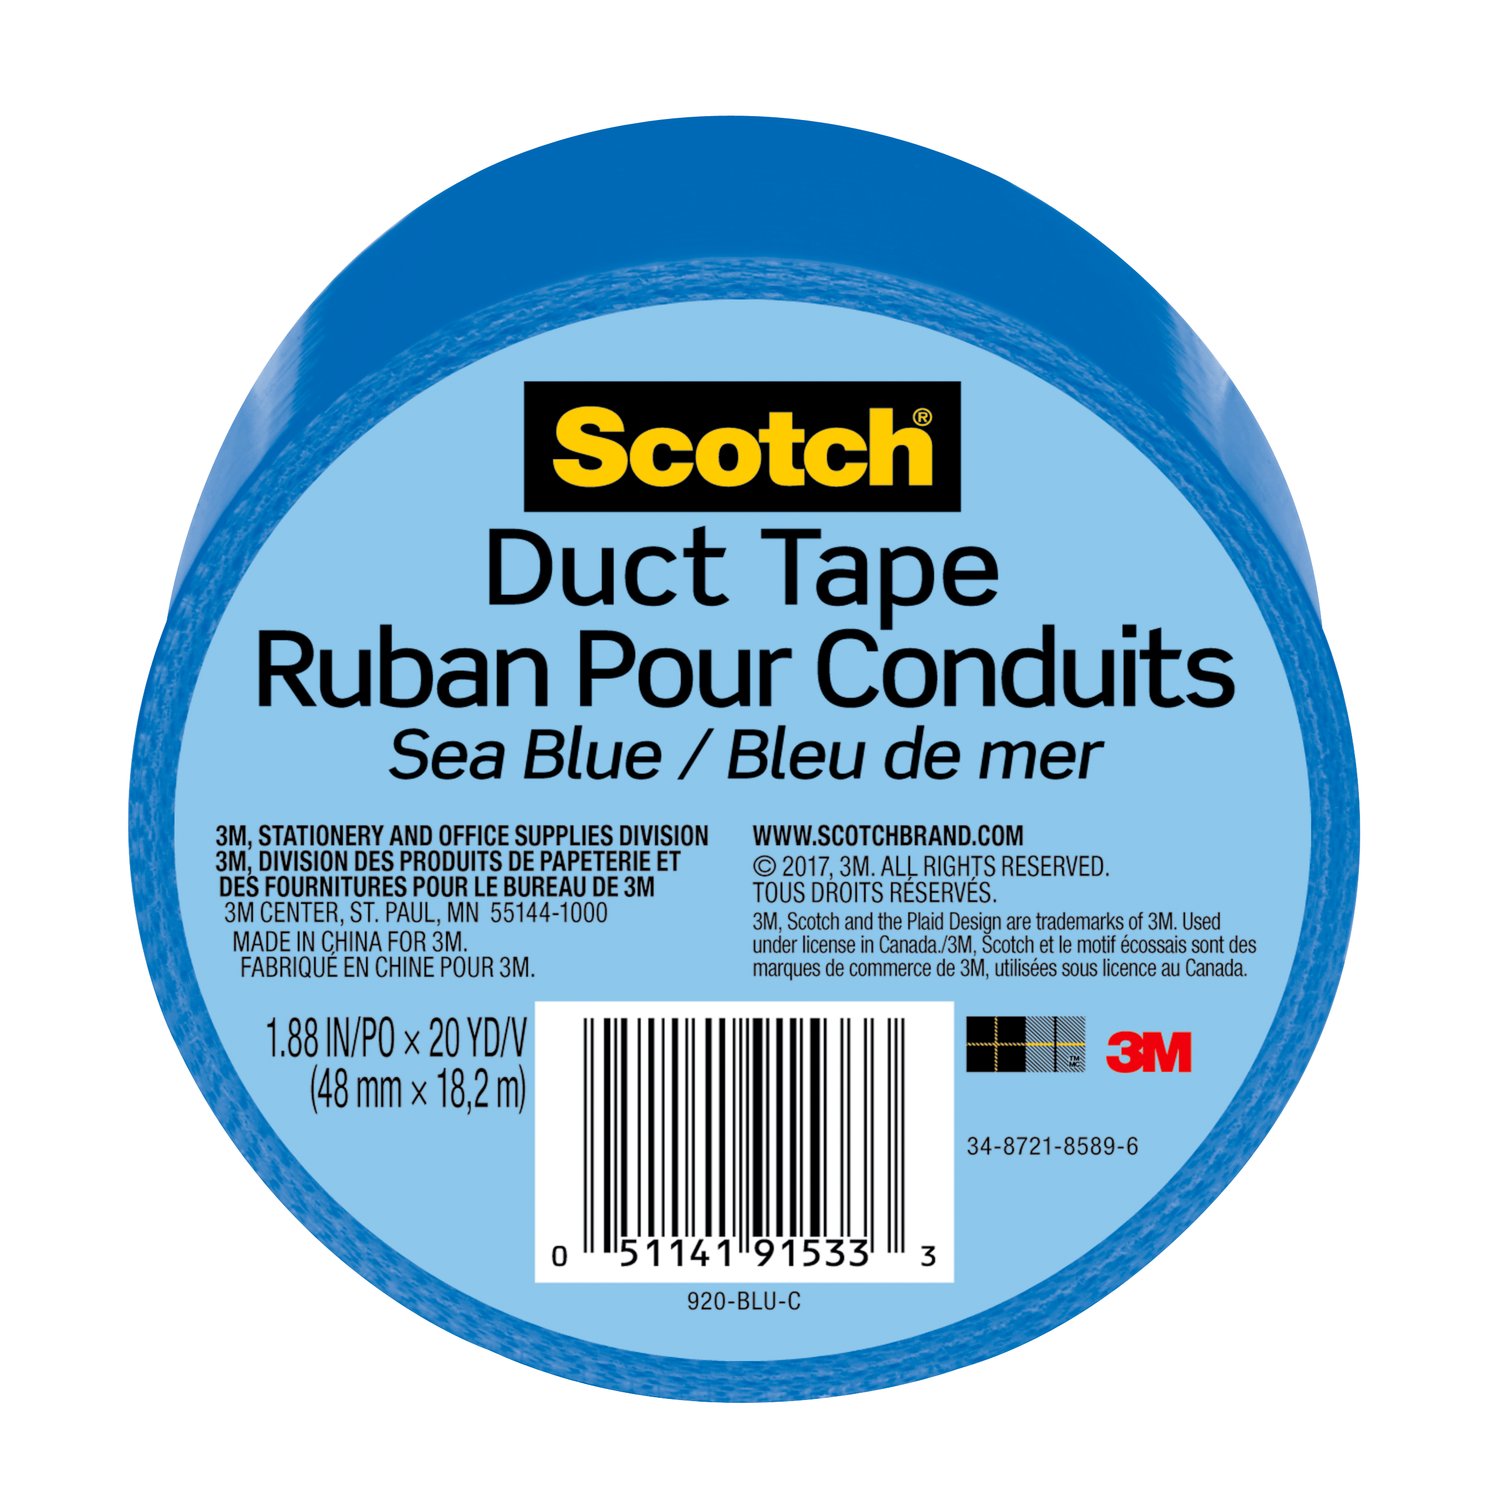 7100166628 - Scotch Duct Tape 920-BLU-C, 1.88 in x 20 yd (48 mm x 18,2 m), Blue